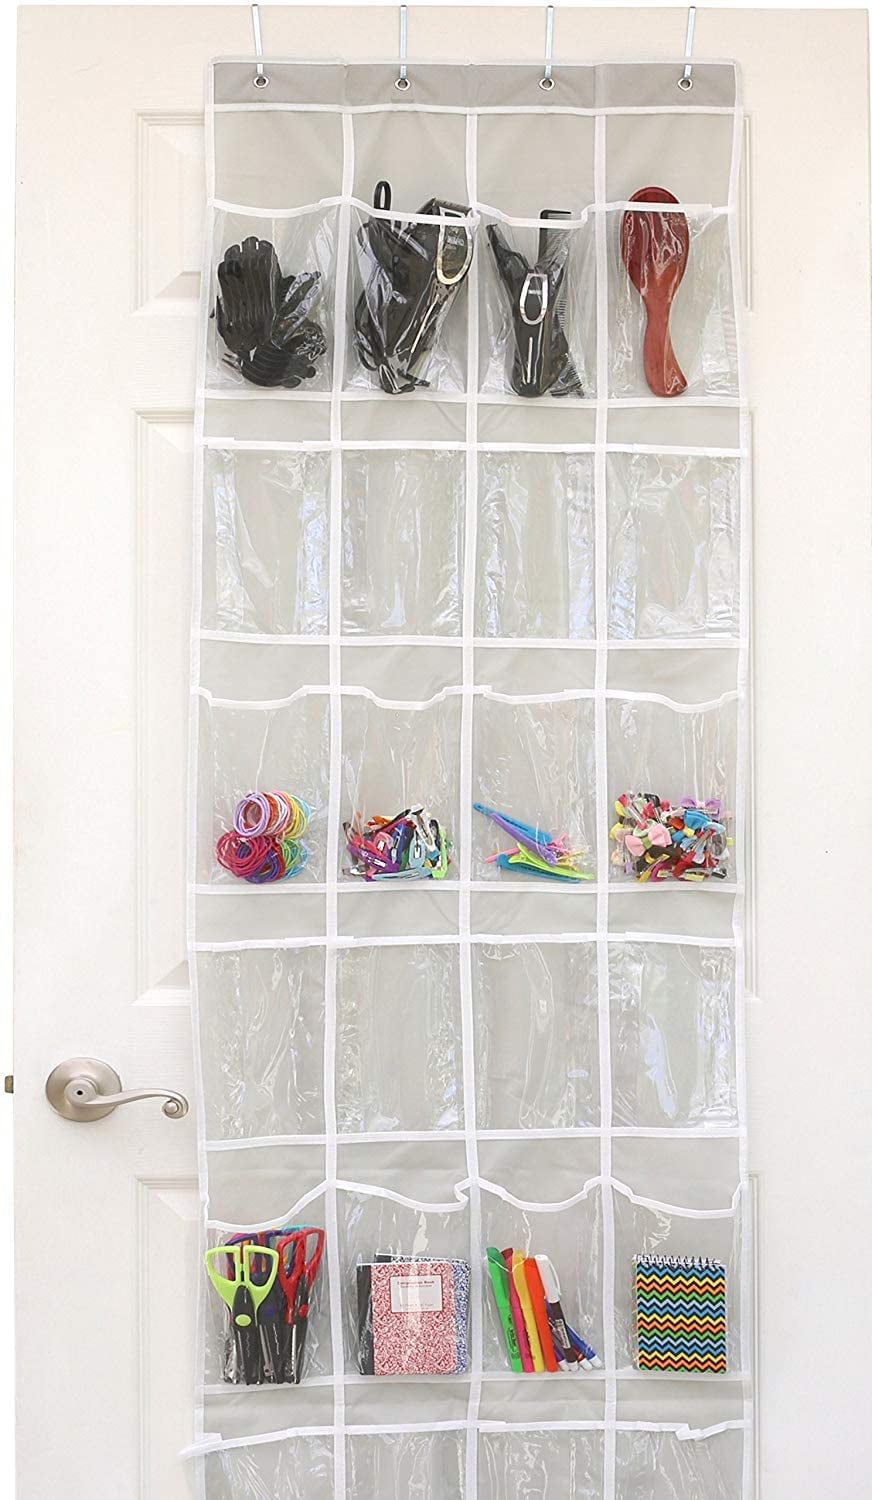 24 Pockets Over Door Shoe Organizer Foldable Transparent Hanging Shoe Storage bag with Hook Mesh Pockets Shoe Hanger for Kitchen Bedroom White